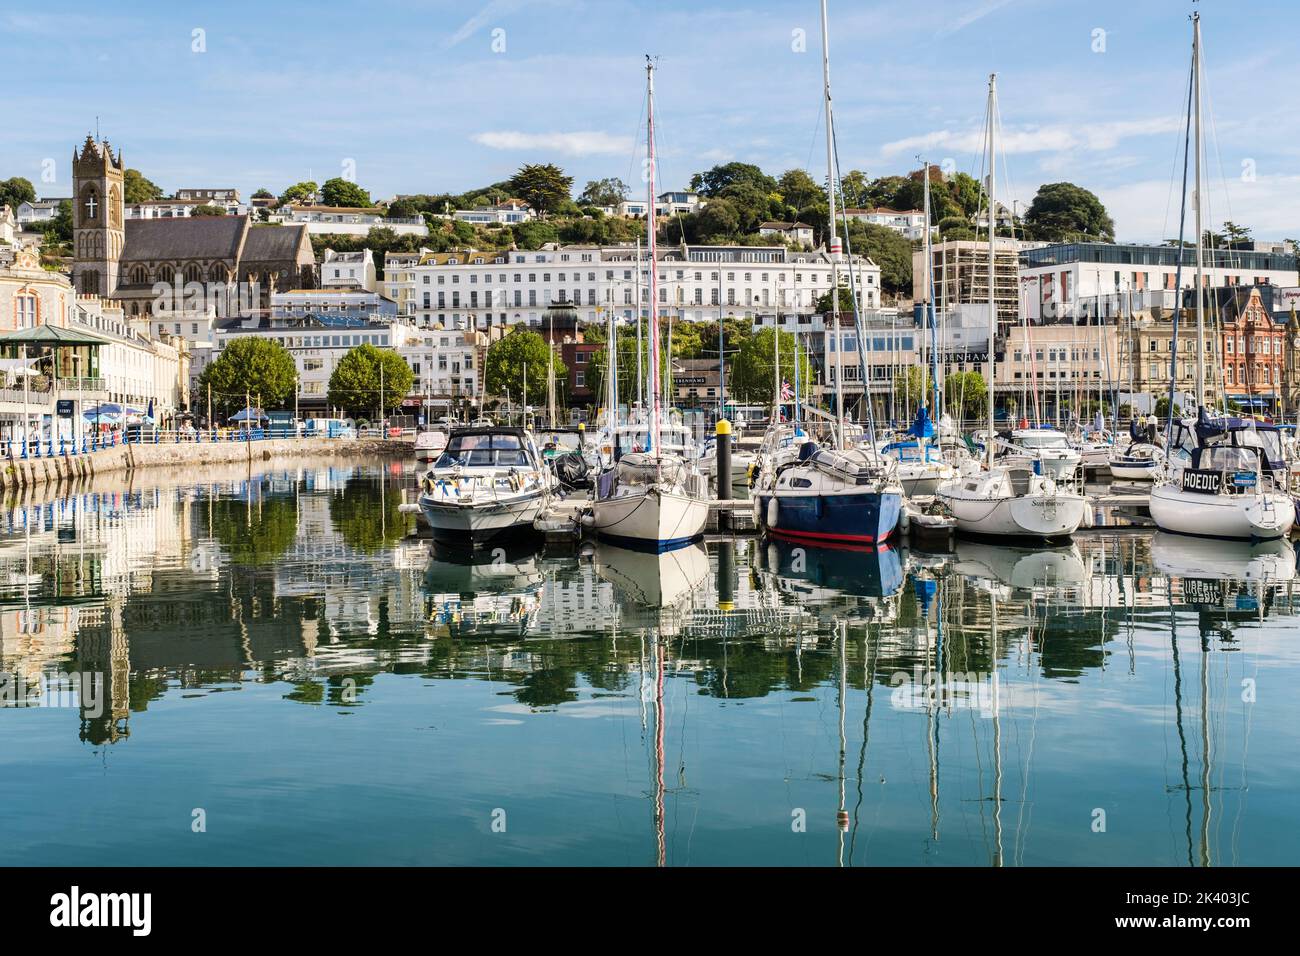 Die Boote, die im Binnendock des Hafens festgemacht wurden, spiegeln sich im ruhigen Wasser wider. Torquay, Devon, England, Großbritannien Stockfoto